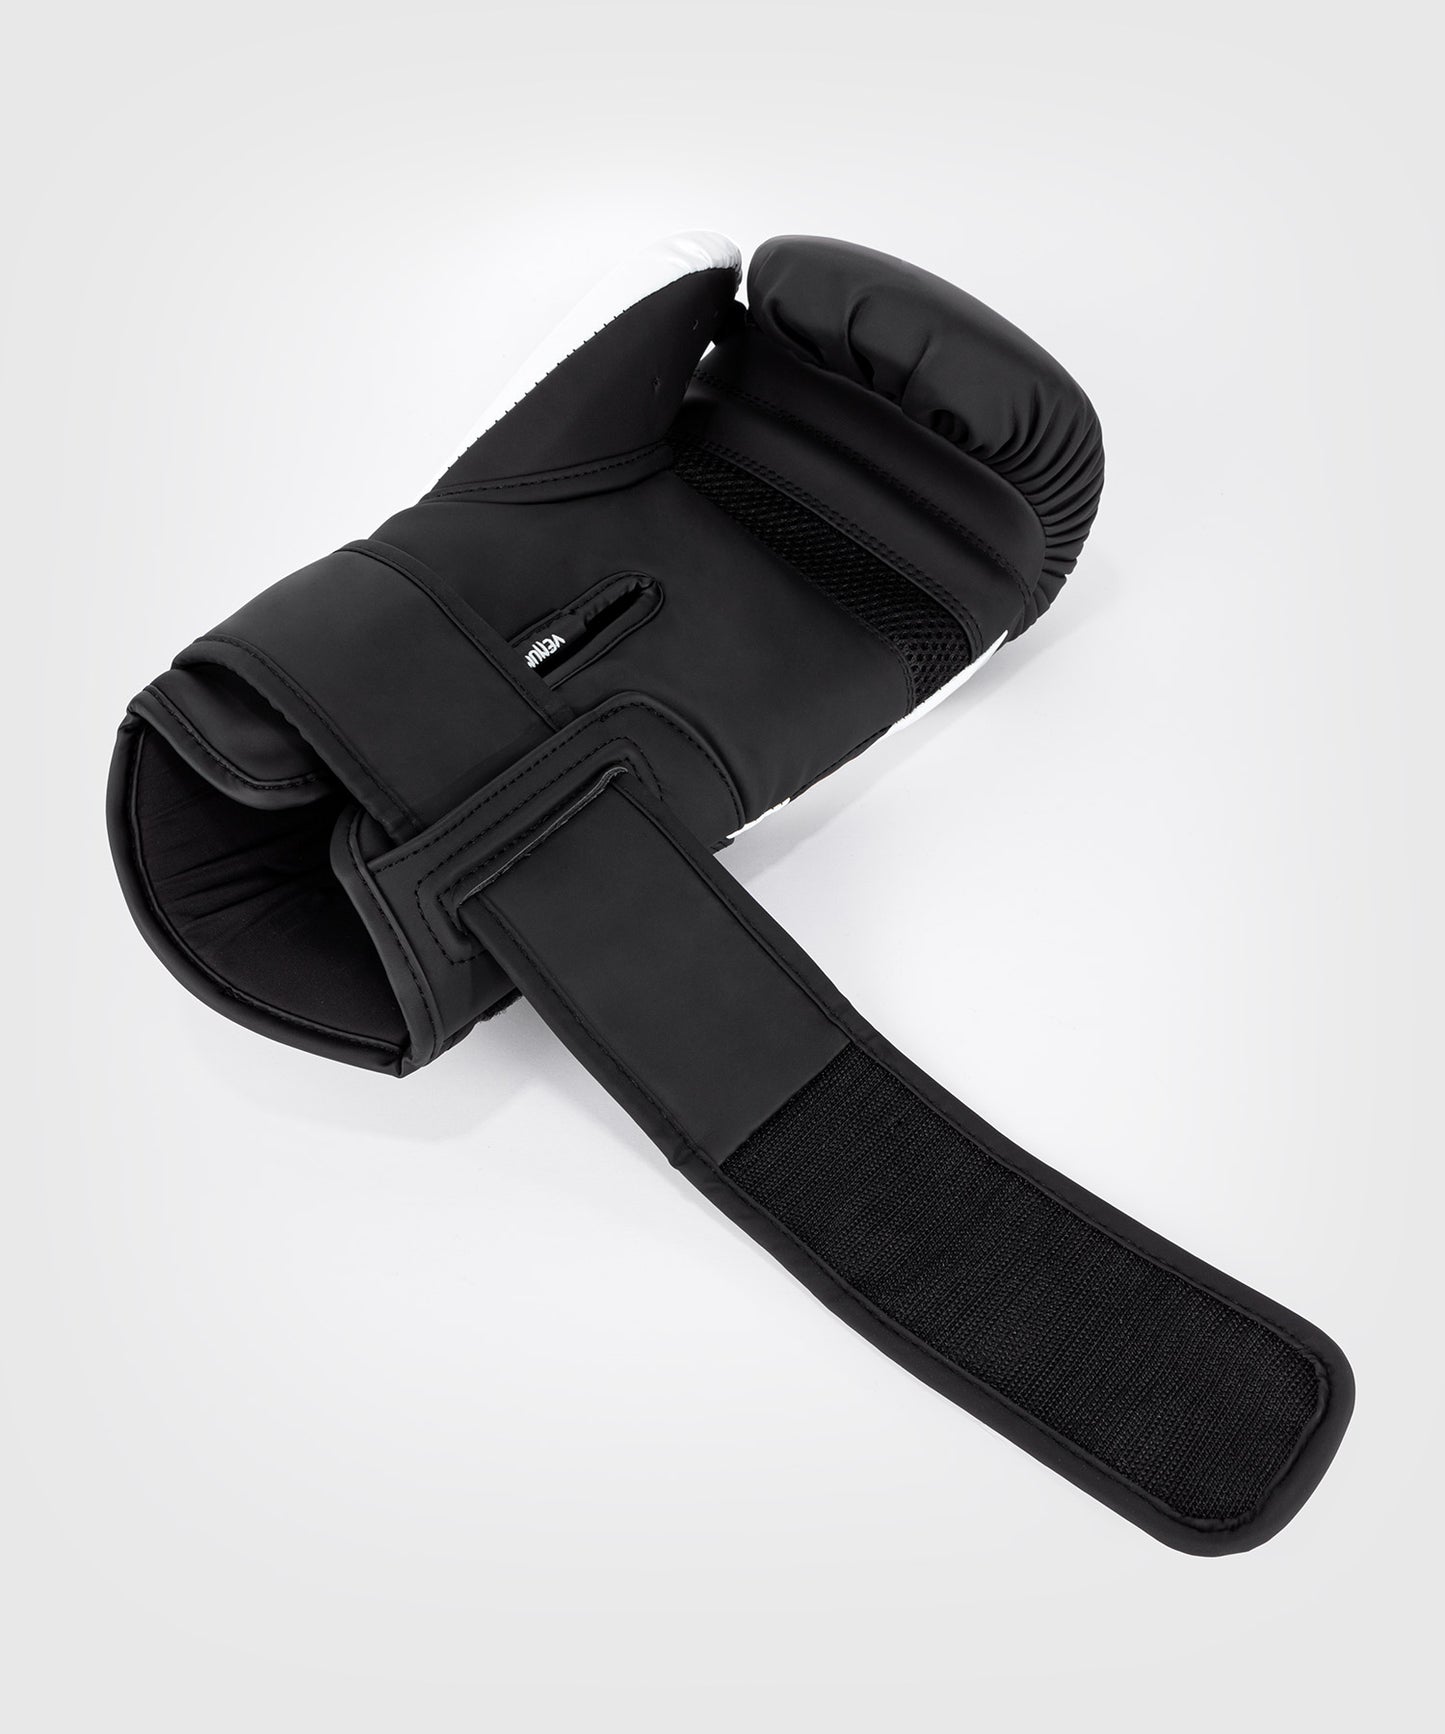 Боксерские перчатки Venum Challenger 4.0 - черный/белый